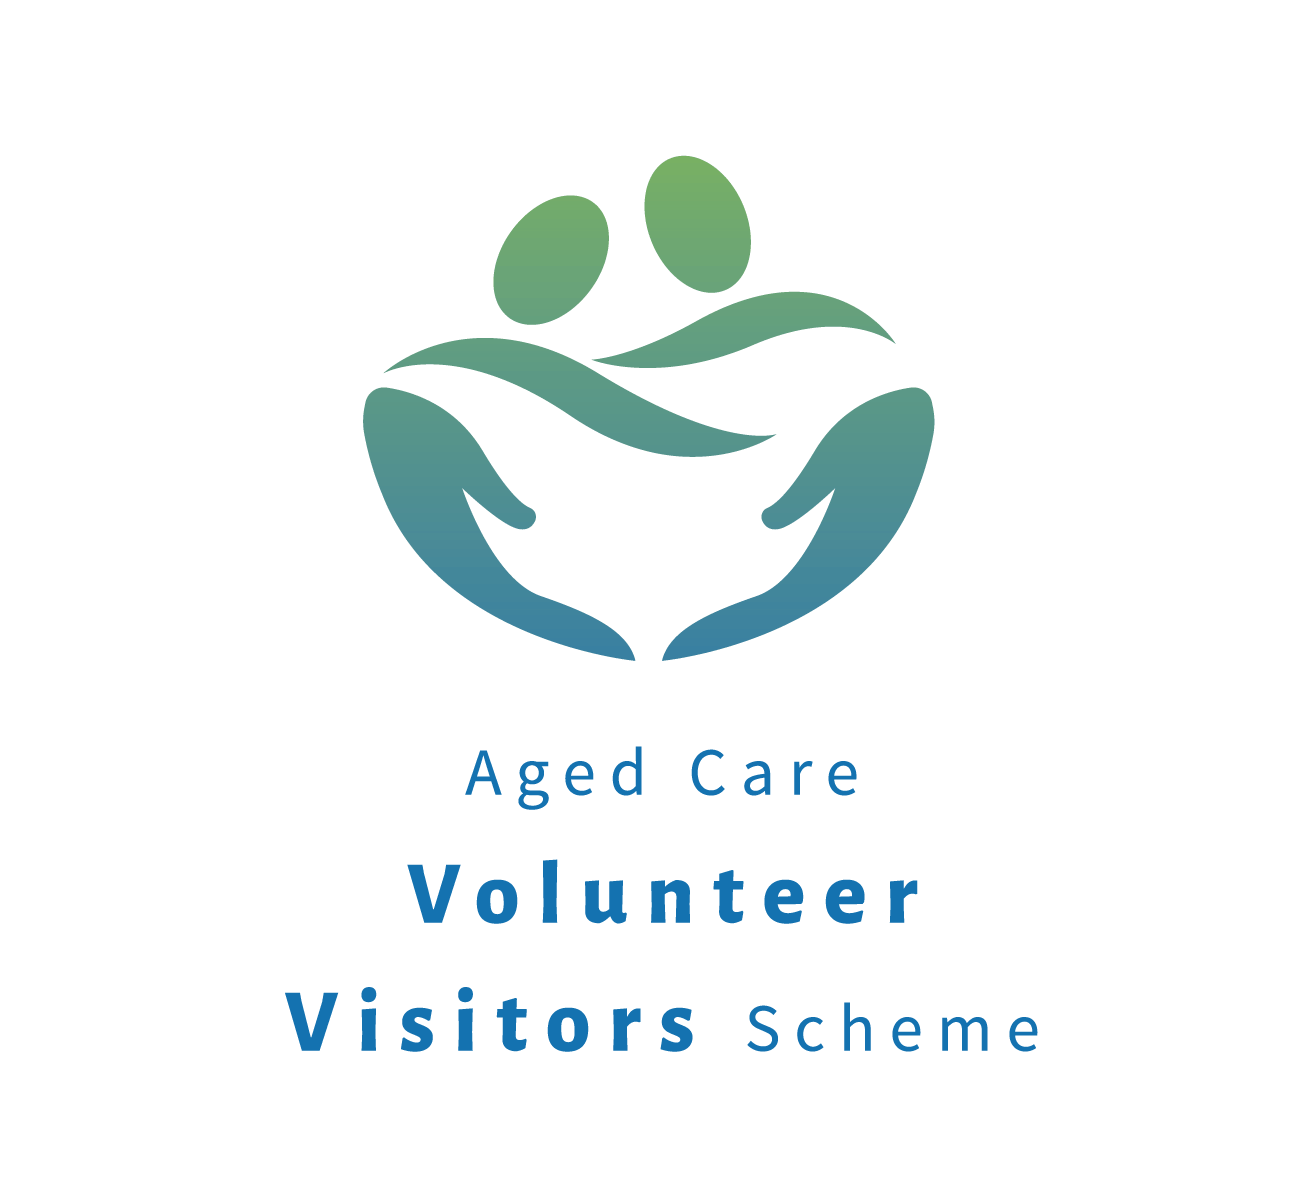 ACVVS Logo - Aged Care Volunteer Visitors Scheme